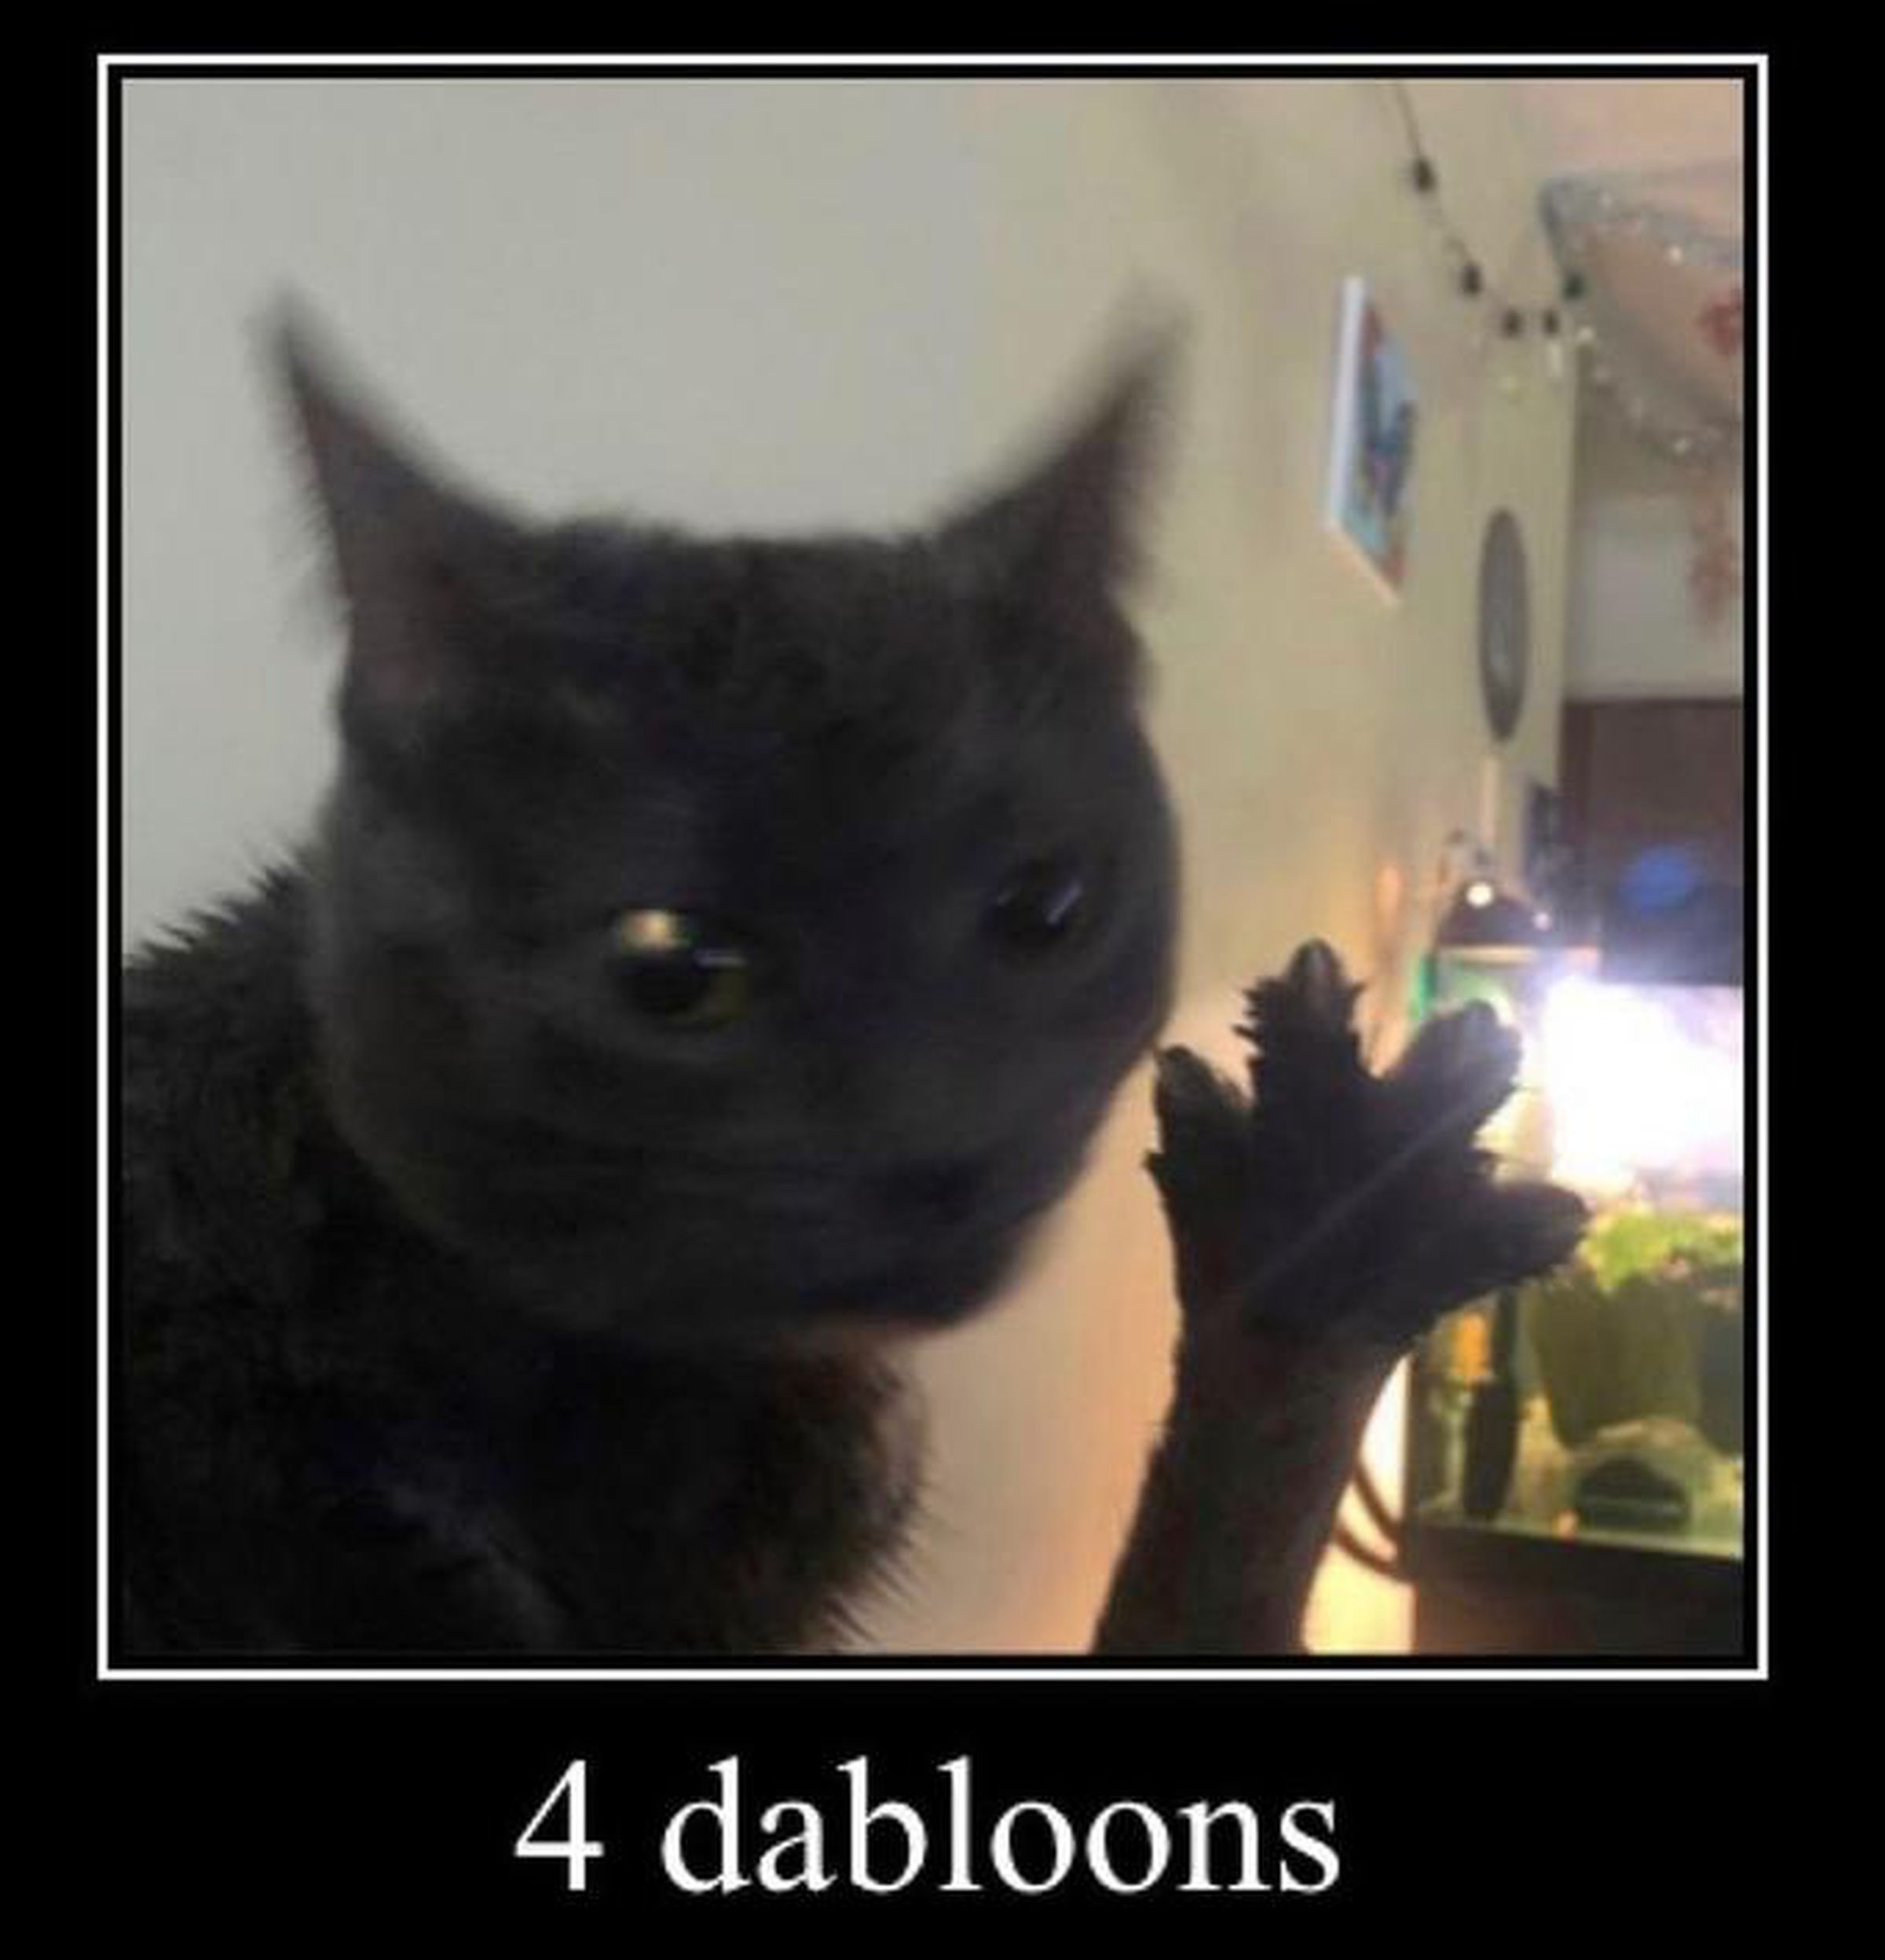 Uzanmış bir pençeyi tutan bir kedi. Resmin altındaki metin "4 dabloons" diyor.